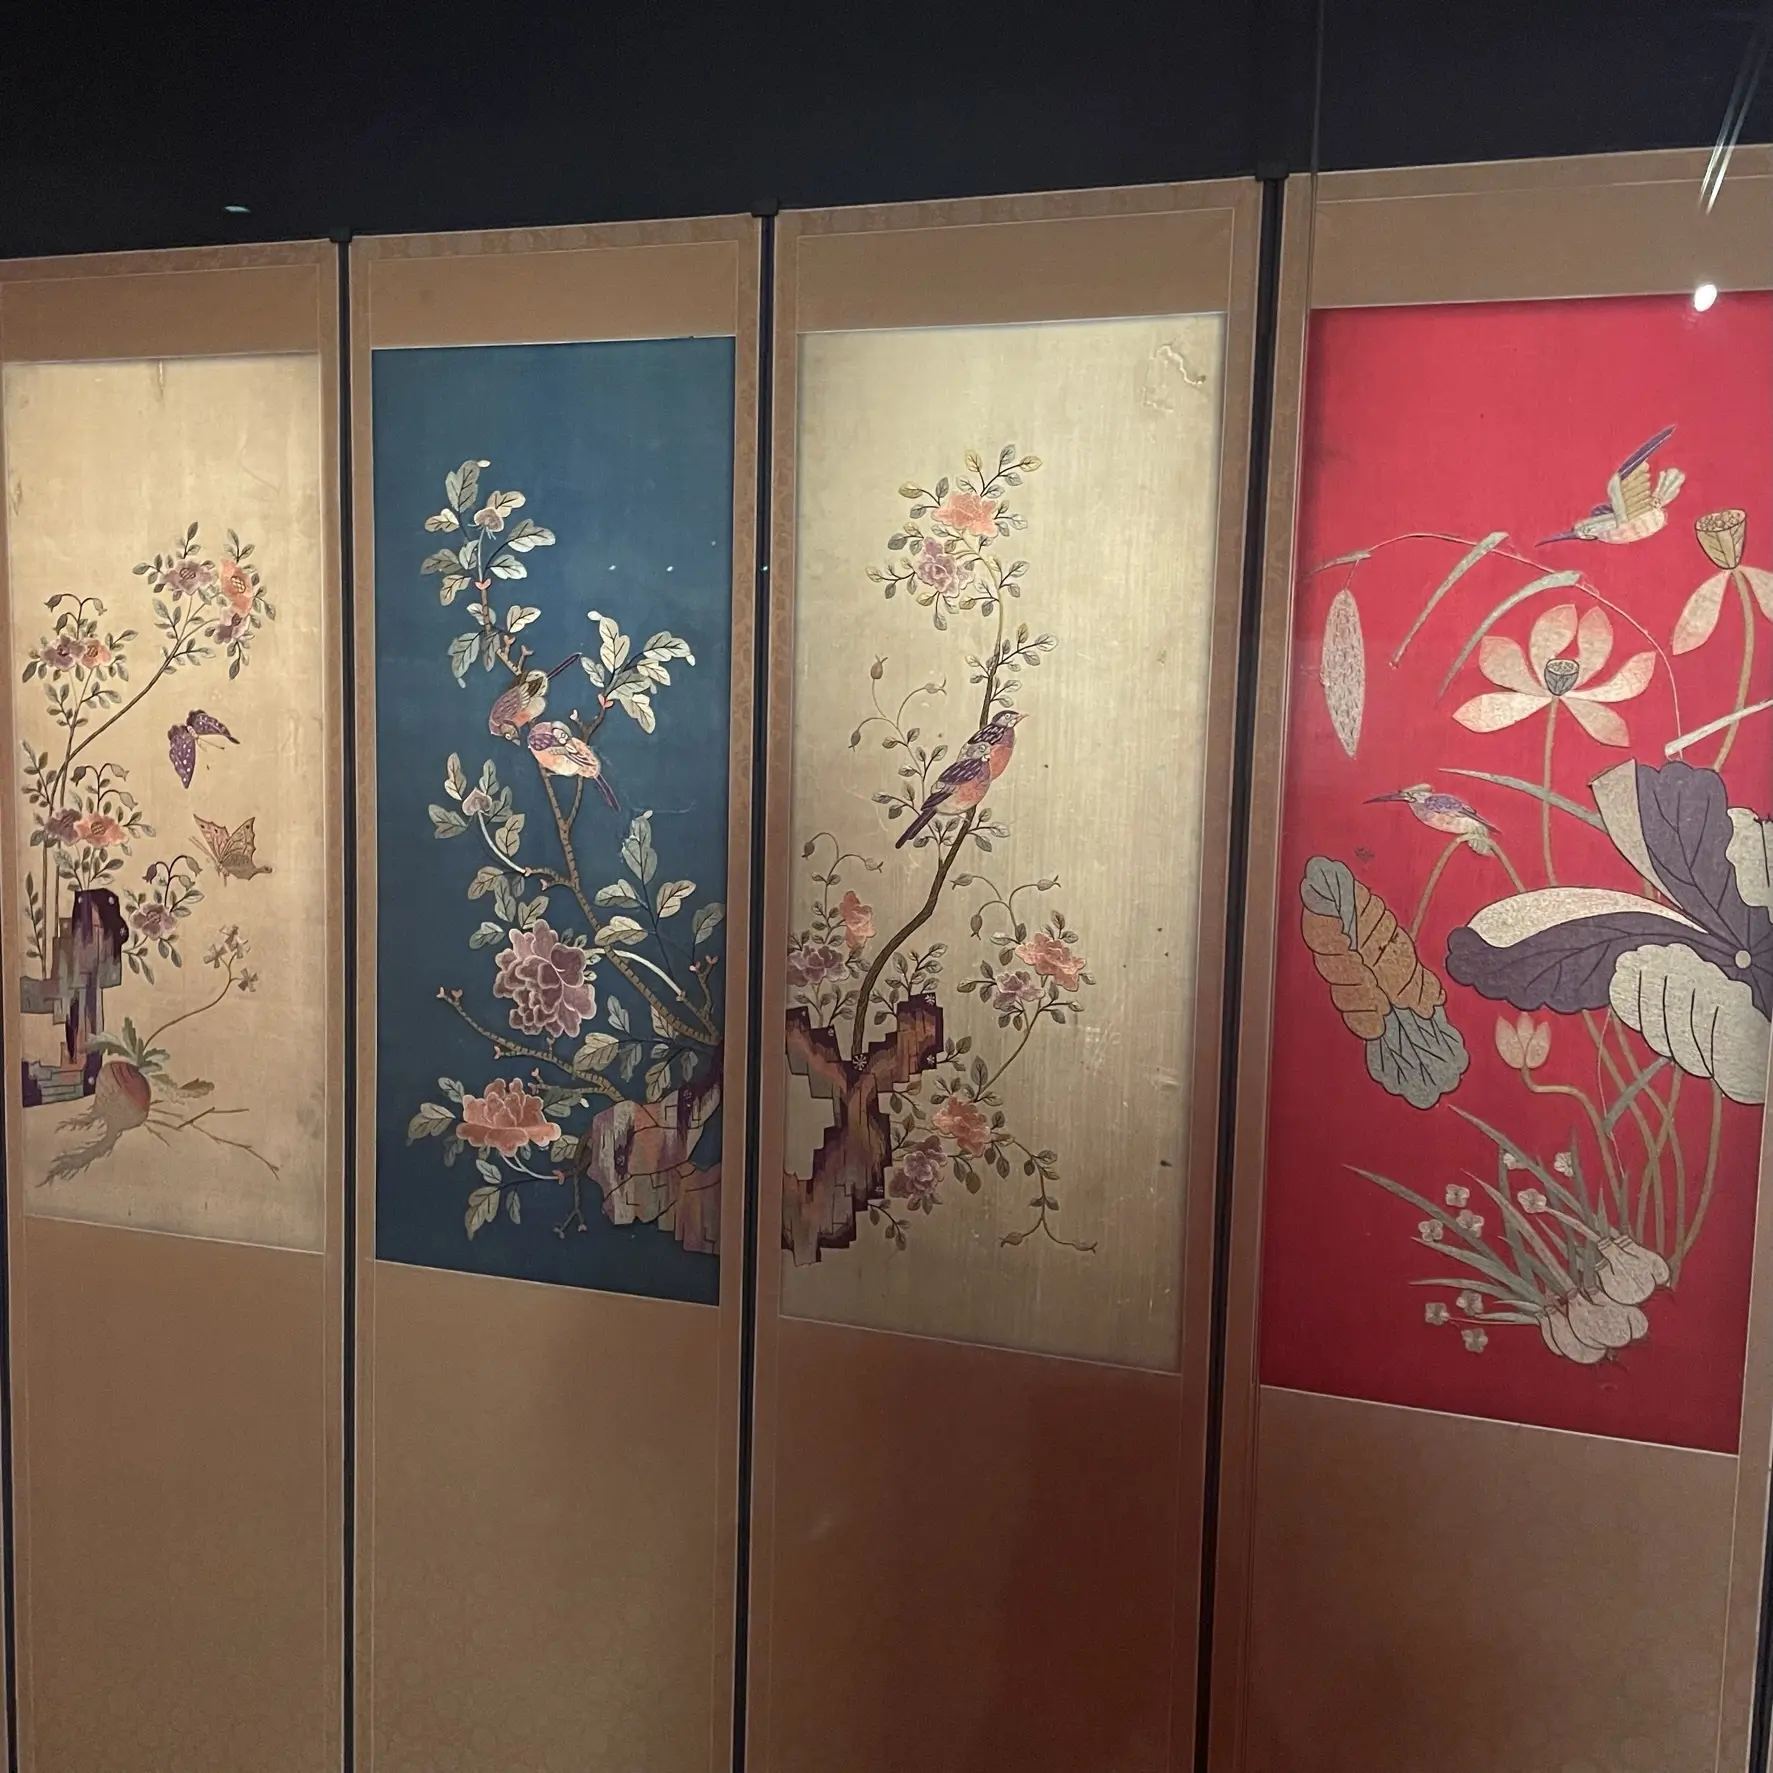 ソウル工芸博物館の展示、「刺繍」と「ポジャギ」